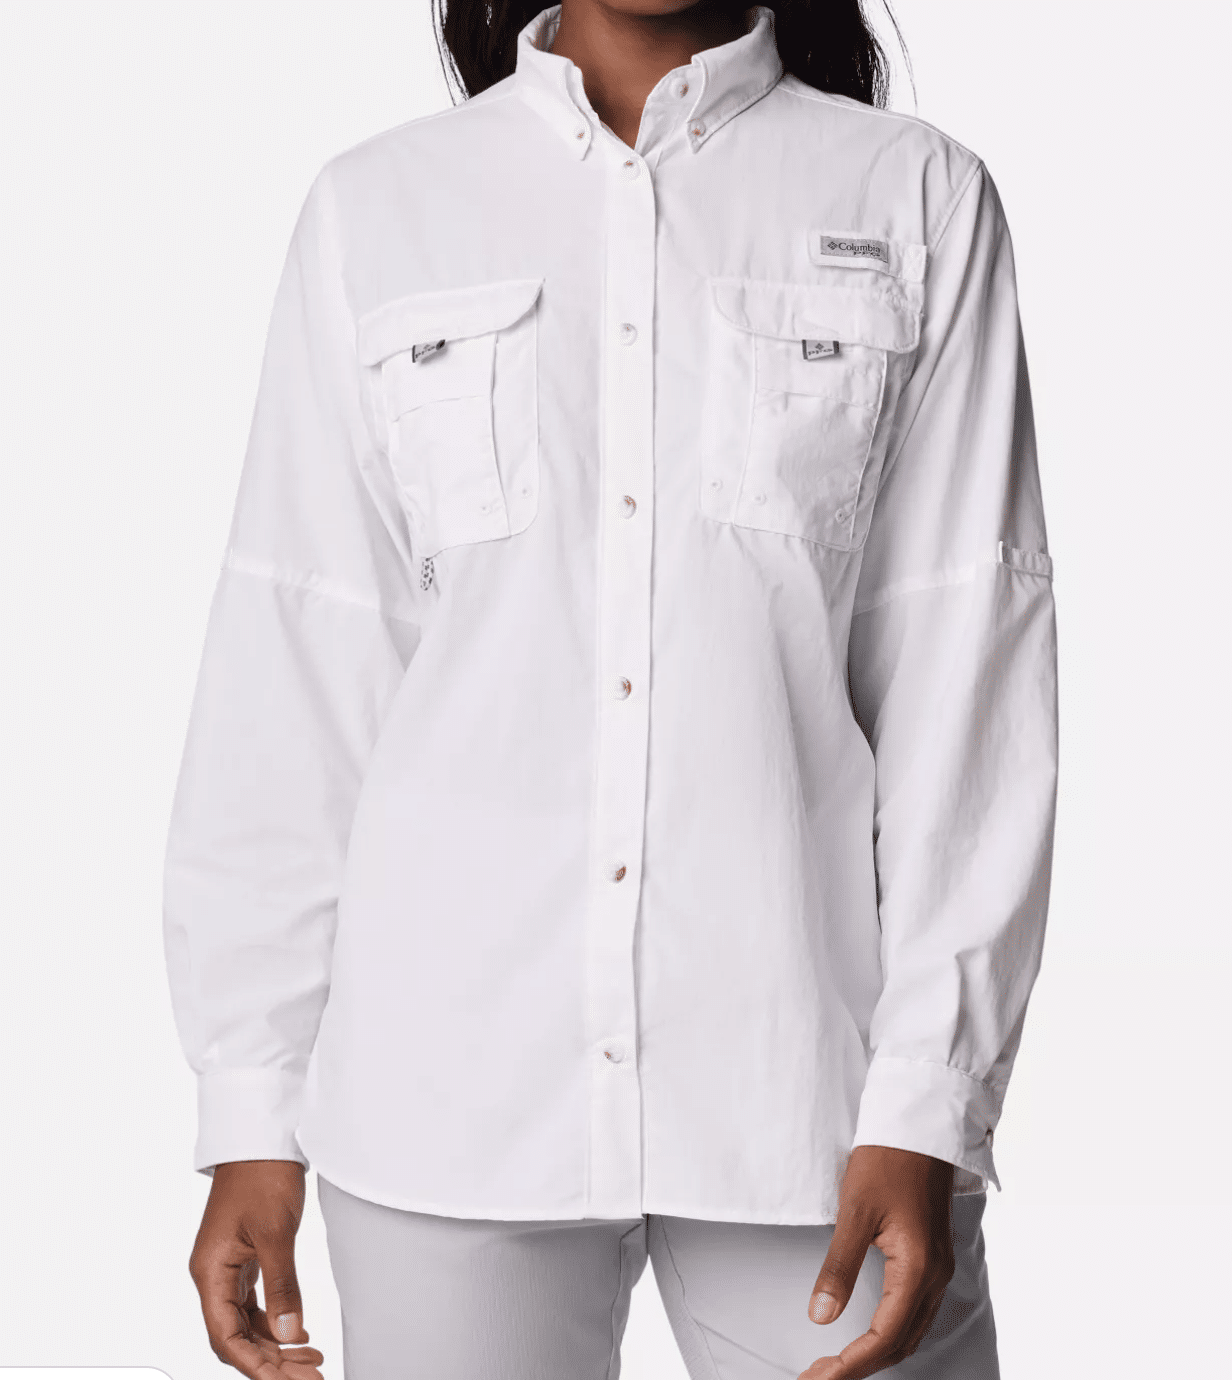 PFG Bahama™ Long Sleeve Shirt